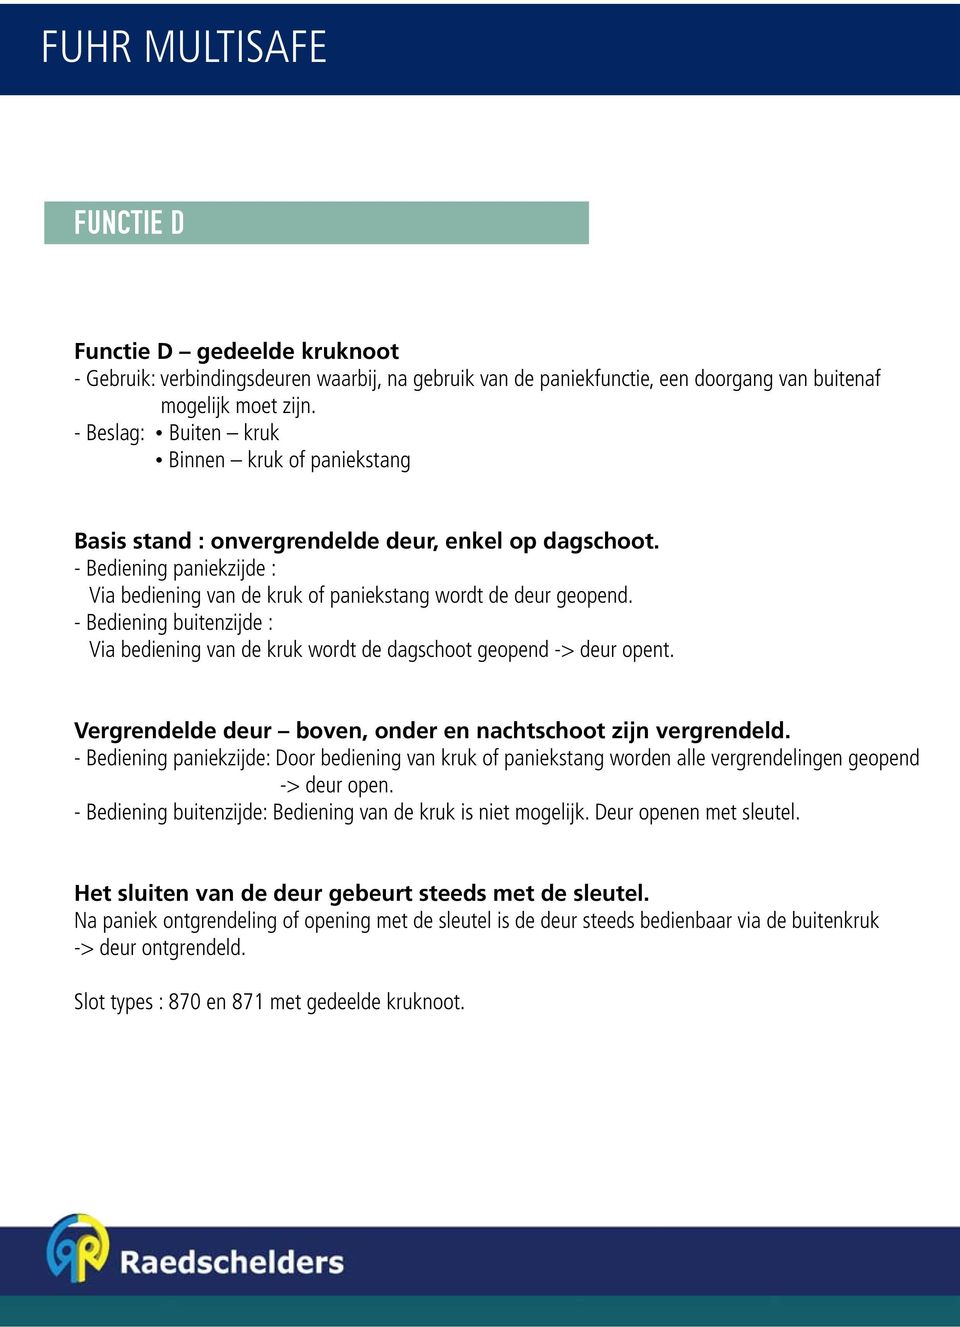 Raedschelders Bouwbeslag Partners. FUHR Anti-paniek RAAM- & DEURBESLAG -  PDF Free Download